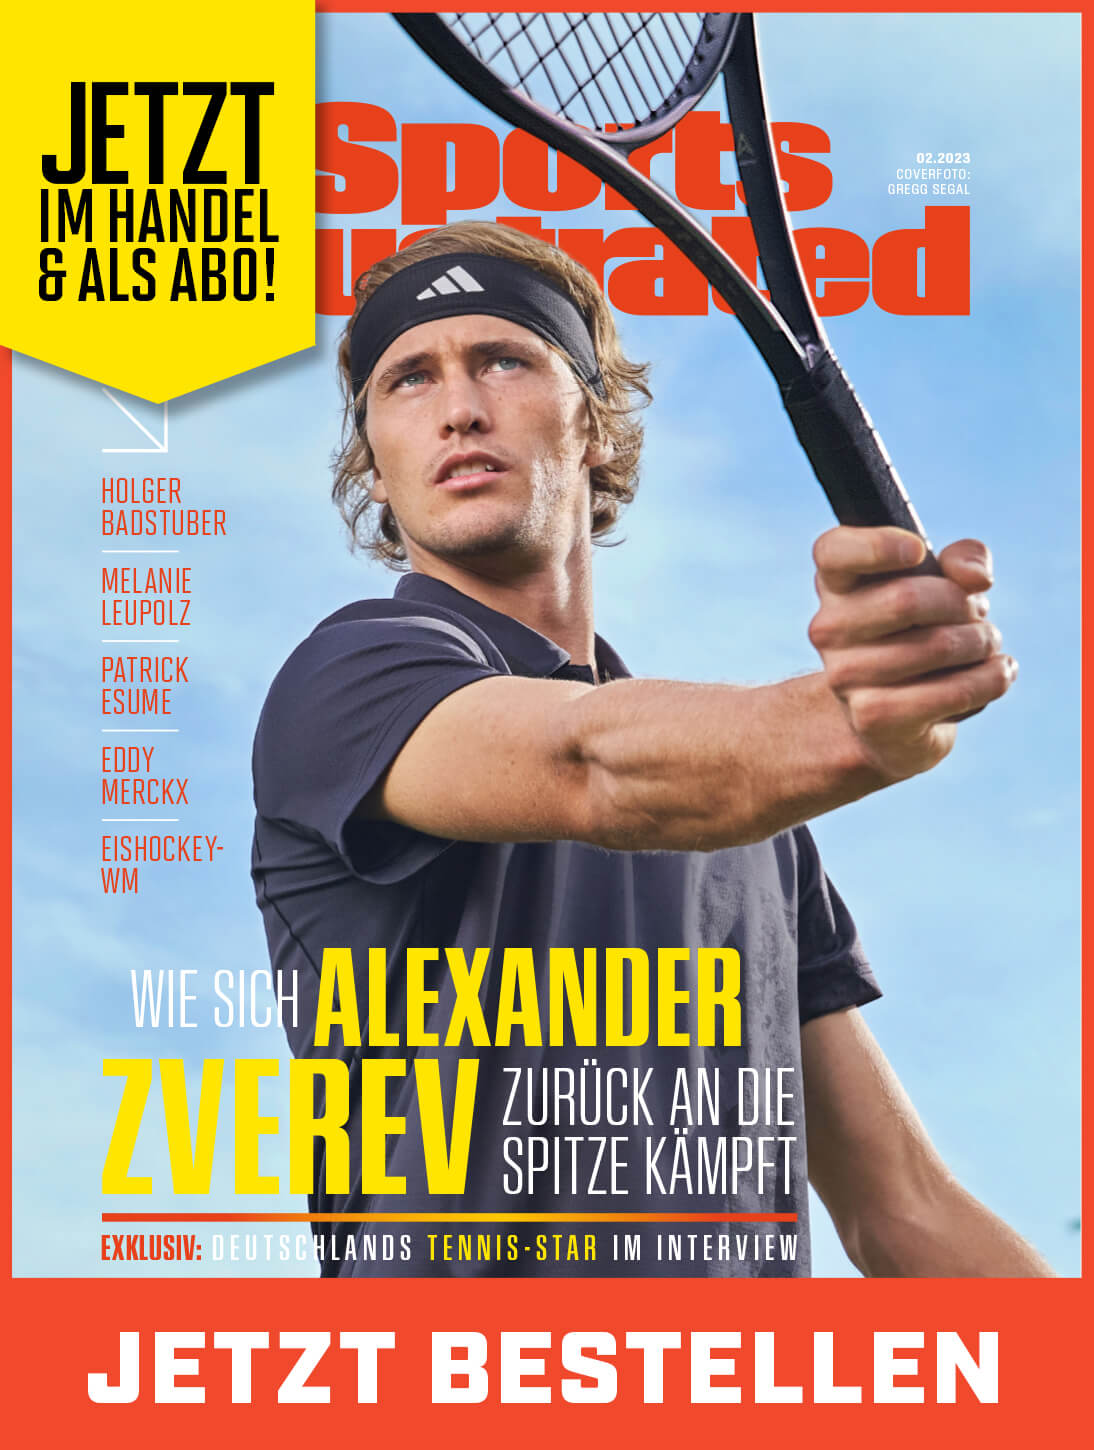 Die neue Ausgabe von Sports Illustrated mit Tennis-Superstar Alexander Zverev